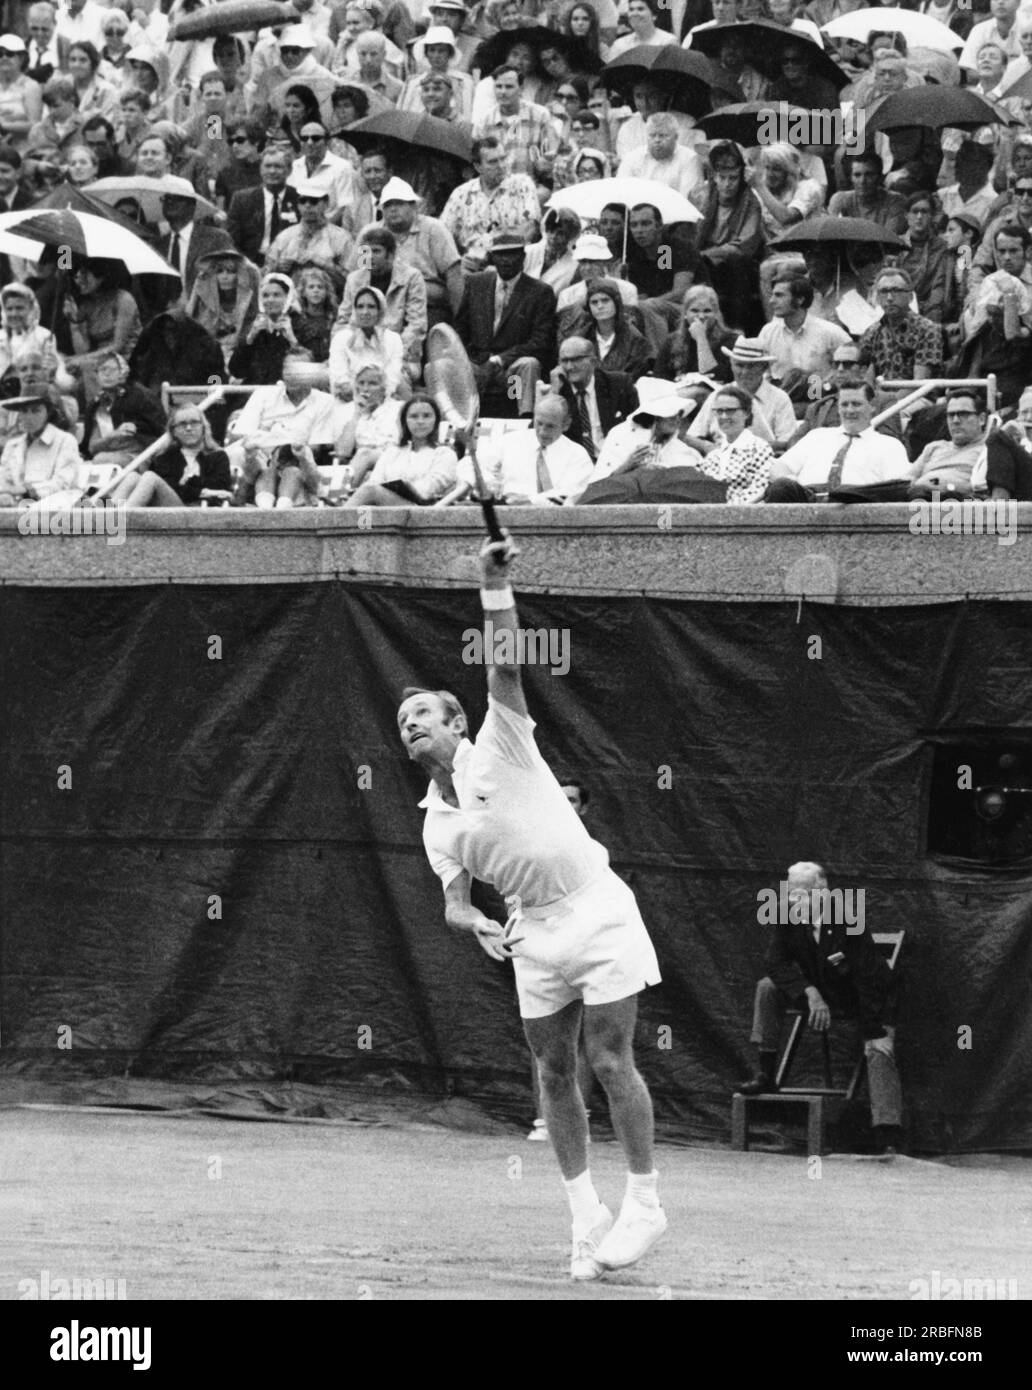 Forest Hills, New York : 6 septembre 1969 le joueur de tennis professionnel Rod laver sert contre Arthur Ashe dans la sem-finale des États-Unis Open tennis Championship. Banque D'Images